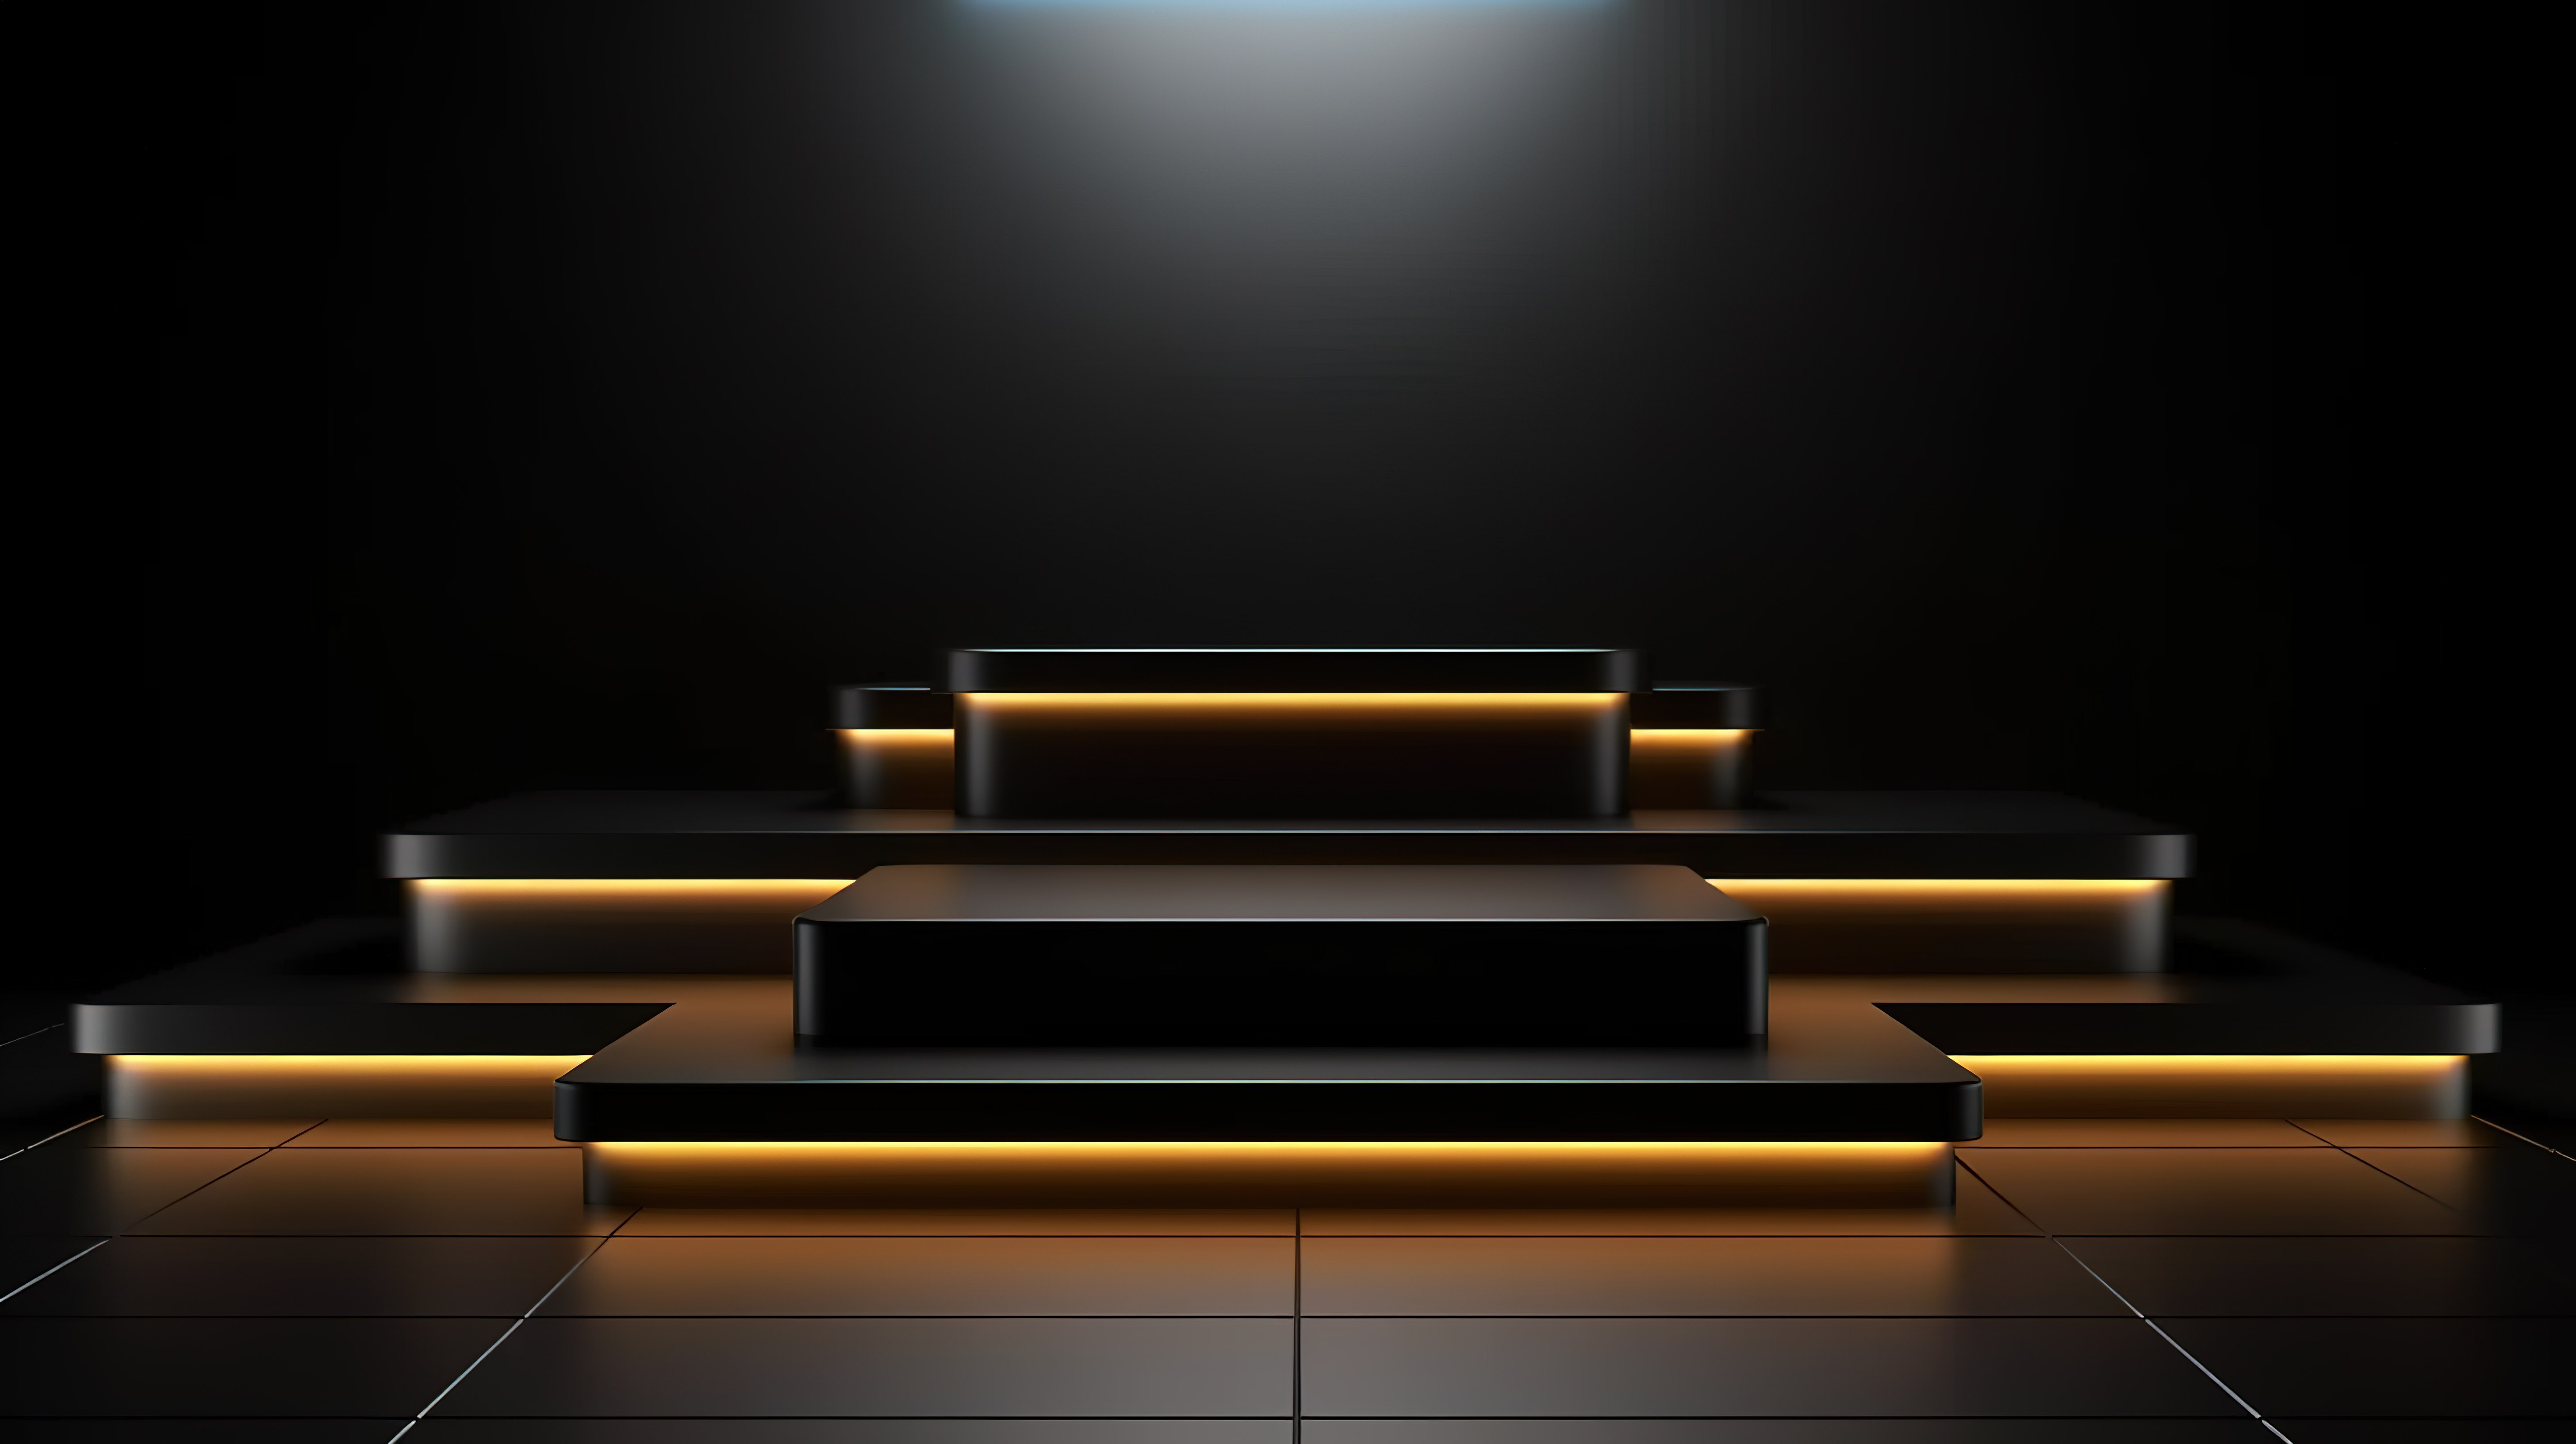 LED 照明舞台上时尚的全黑讲台现代 3D 广告显示屏图片